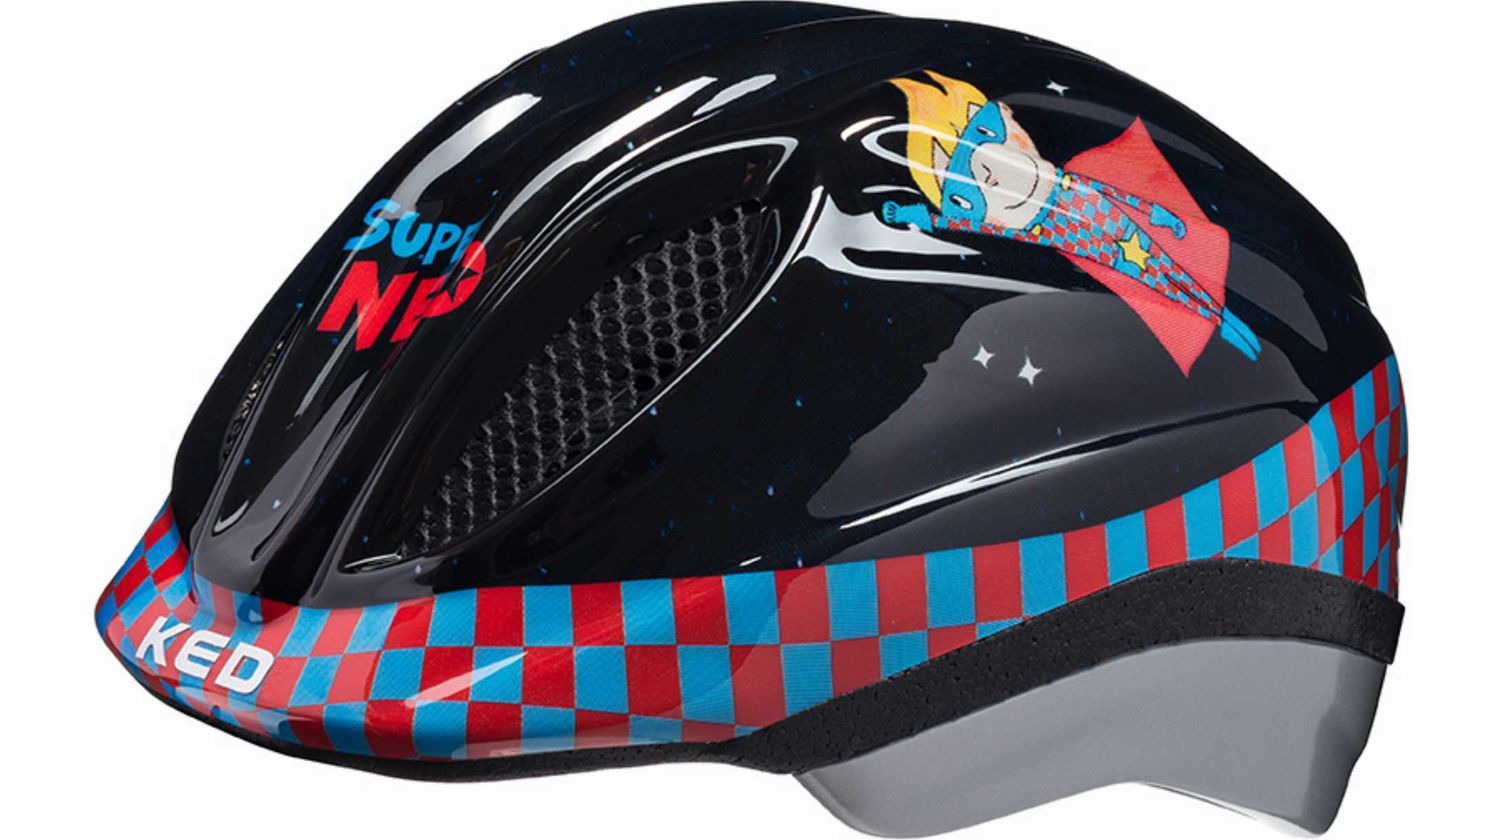 KED Meggy II Originals Super Neo Helm